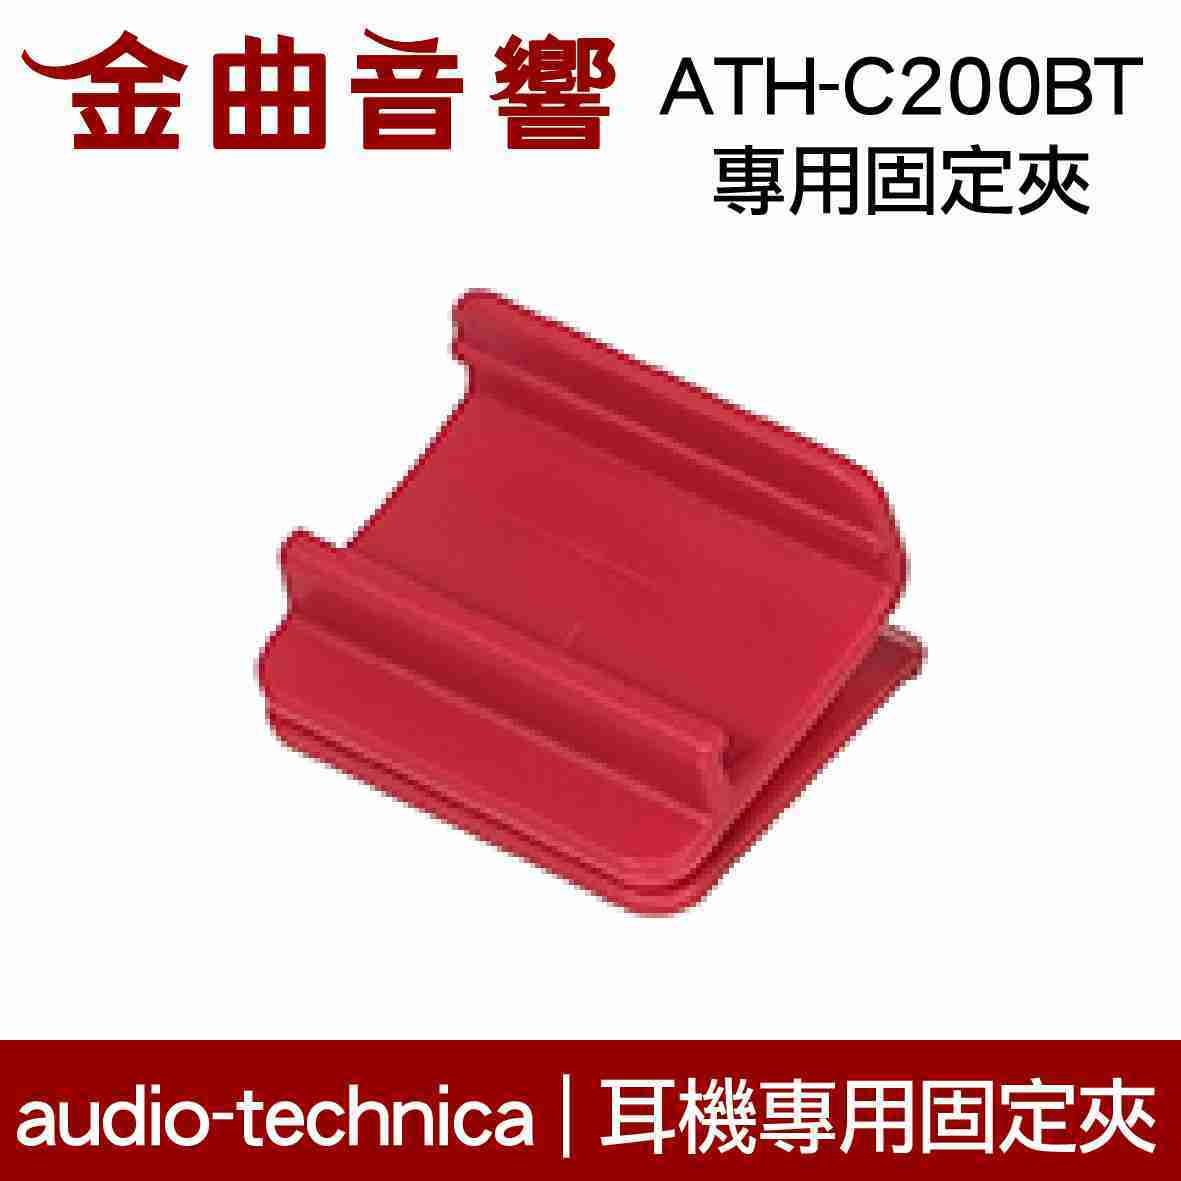 鐵三角 紅色 固定夾 適用 ATH-C200BT 耳機 專用夾 | 金曲音響